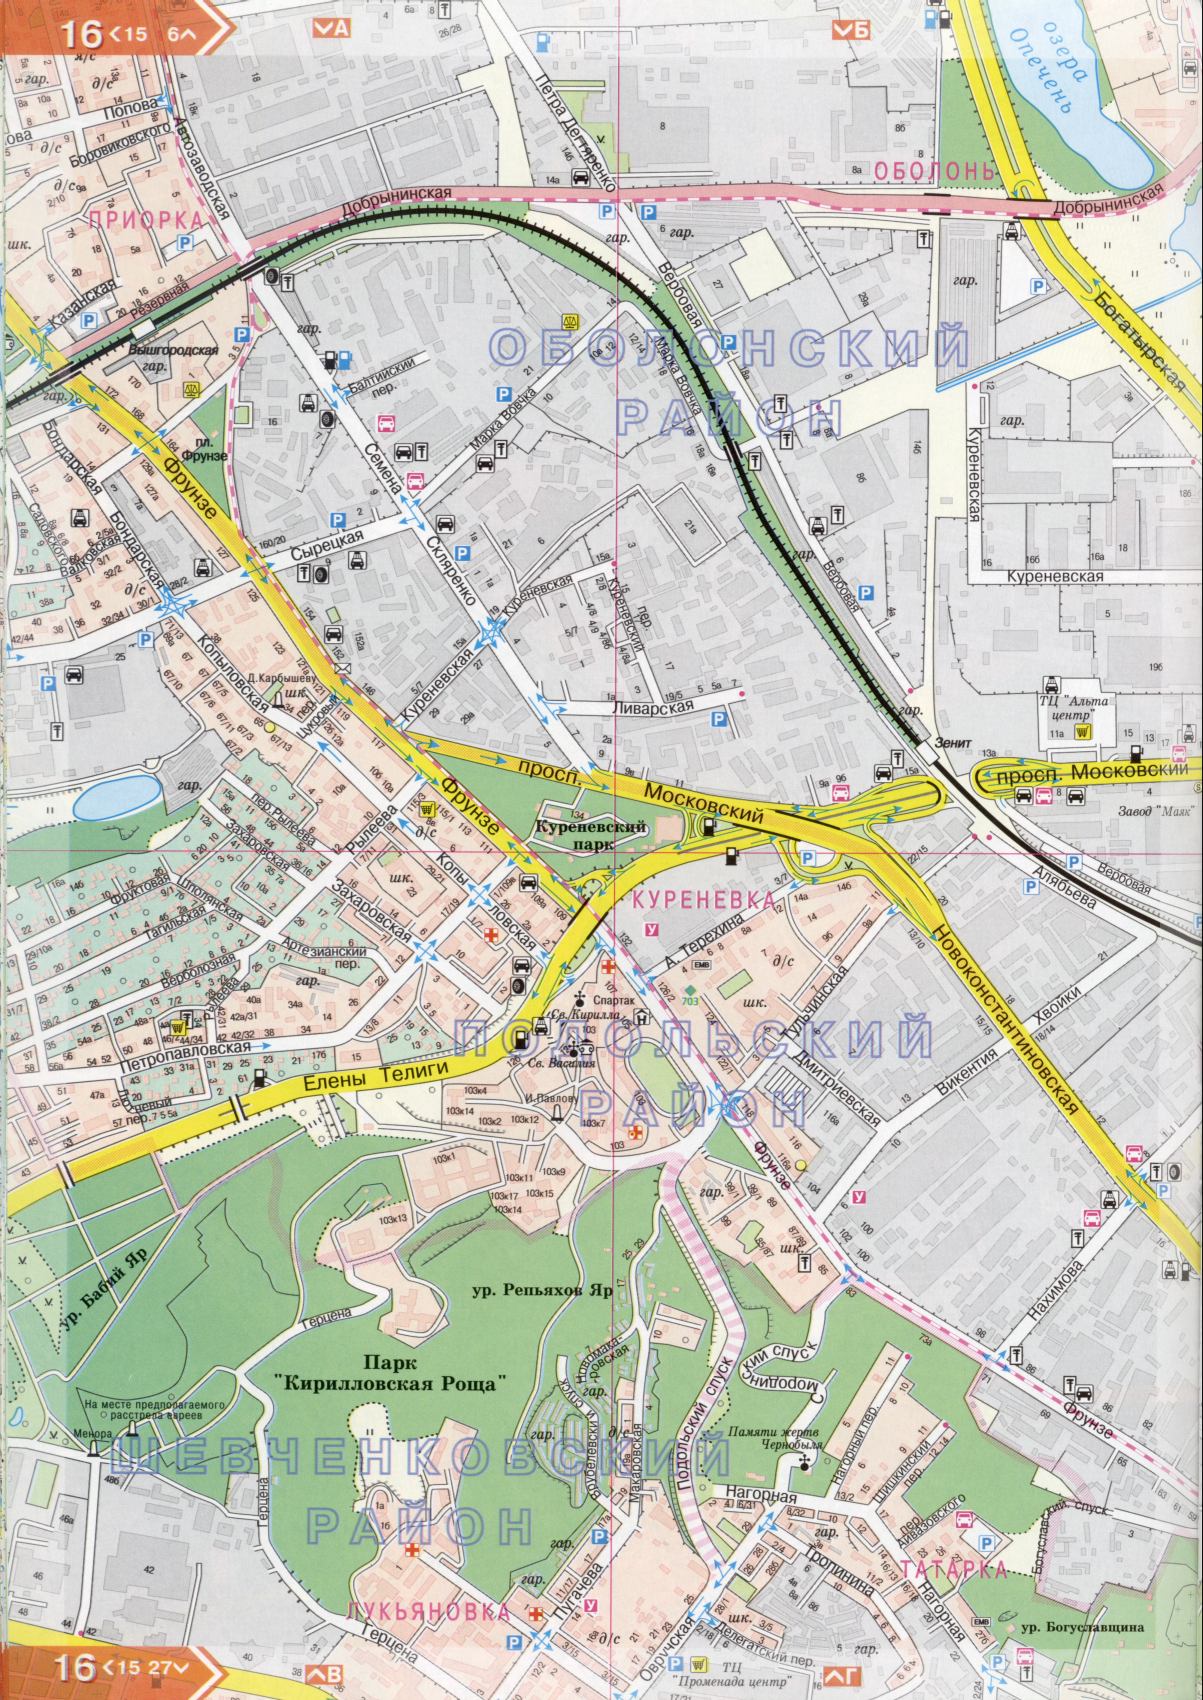 Kiew Karte Details 1cm = 150m für 45 Blatt. Karte von Kiew aus dem Atlas von Autobahnen. Laden Sie eine detaillierte Karte, D1 - Podolsk Bezirk Kiew